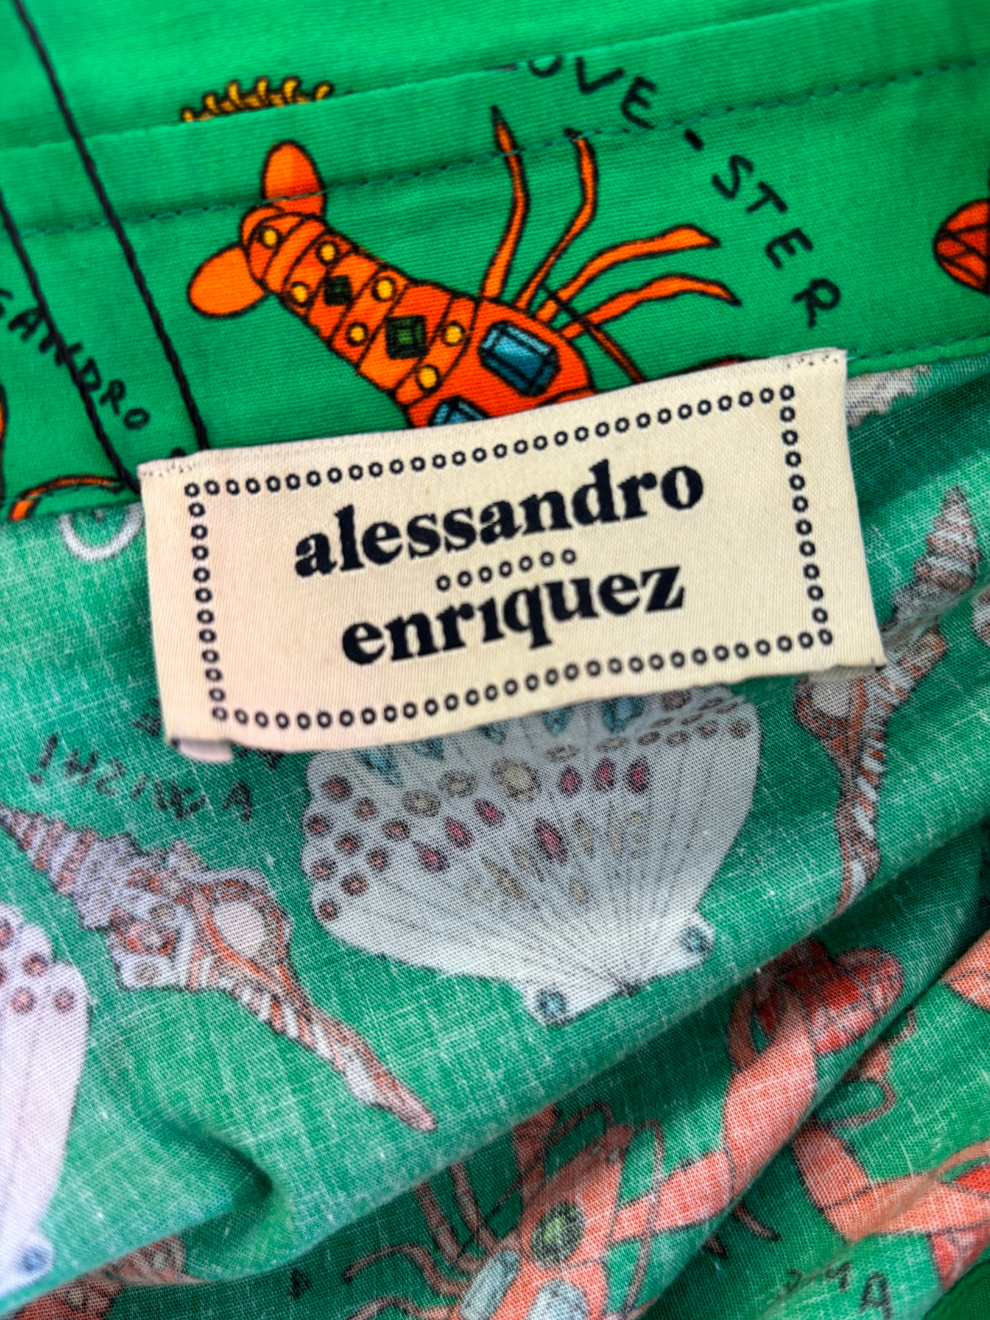 Grüne Bluse mit maritimem Print von Alessandro Enriquez